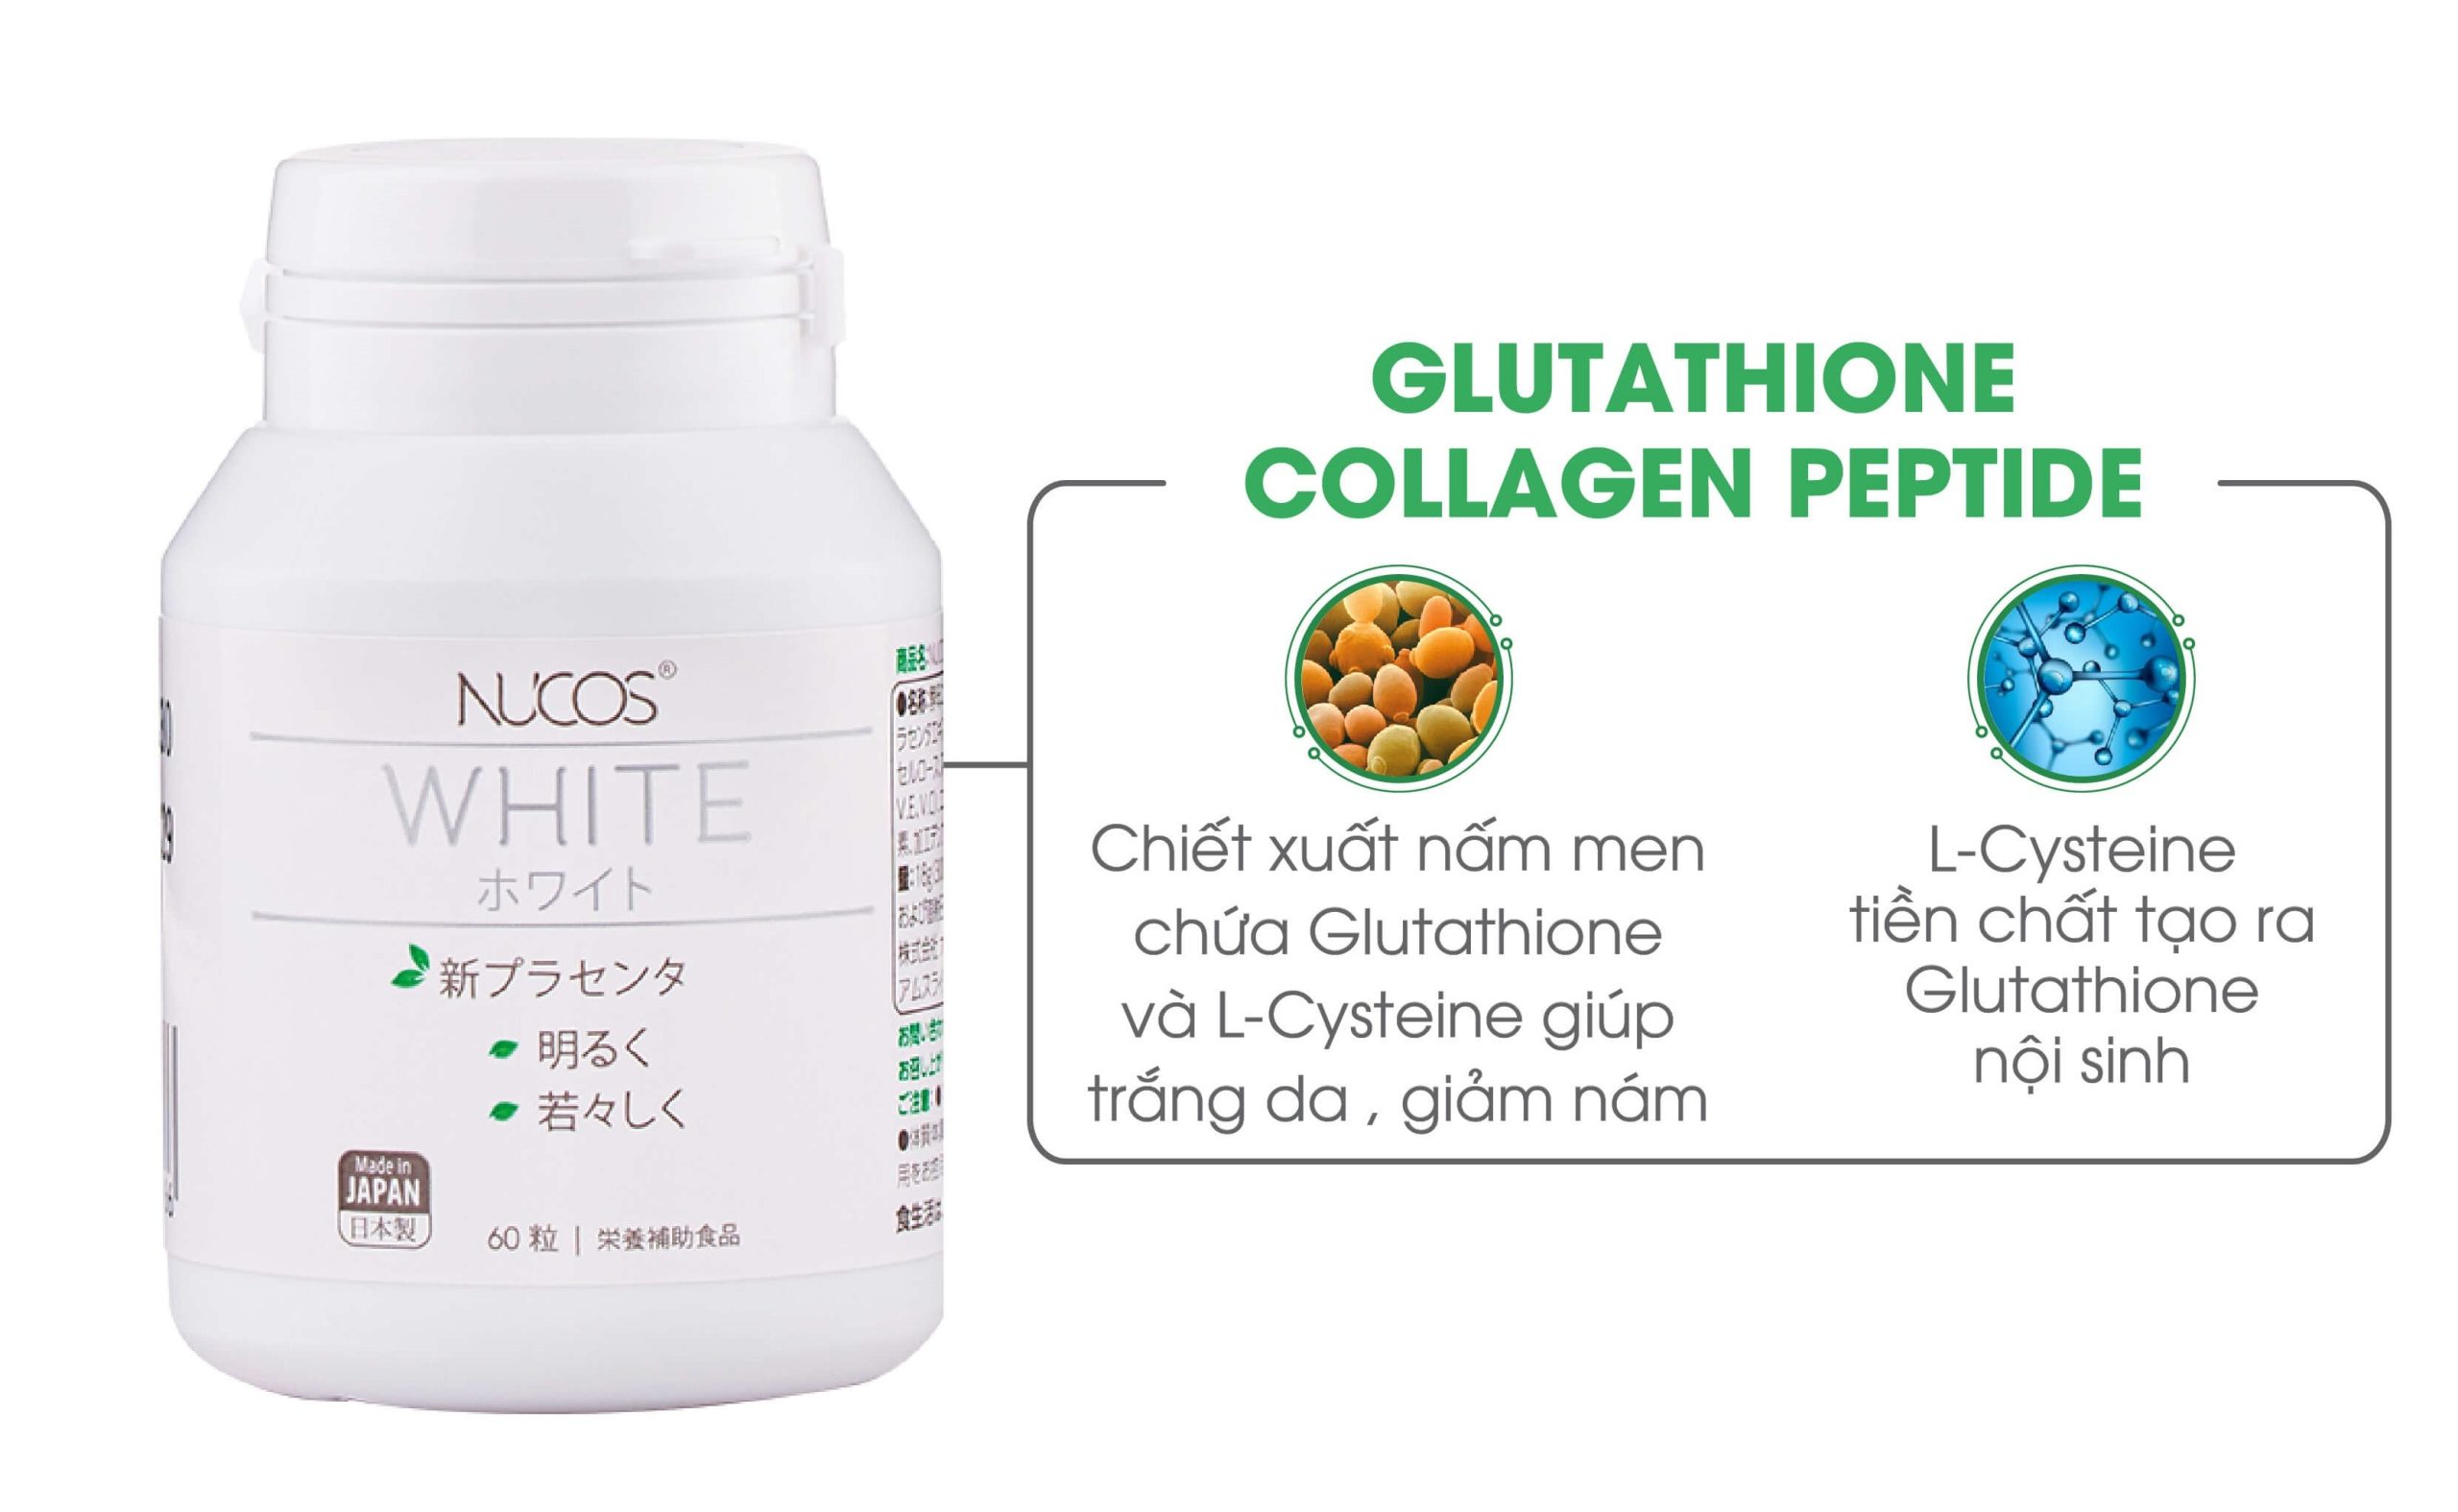 Trả lời câu hỏi: Glutathione là gì? 